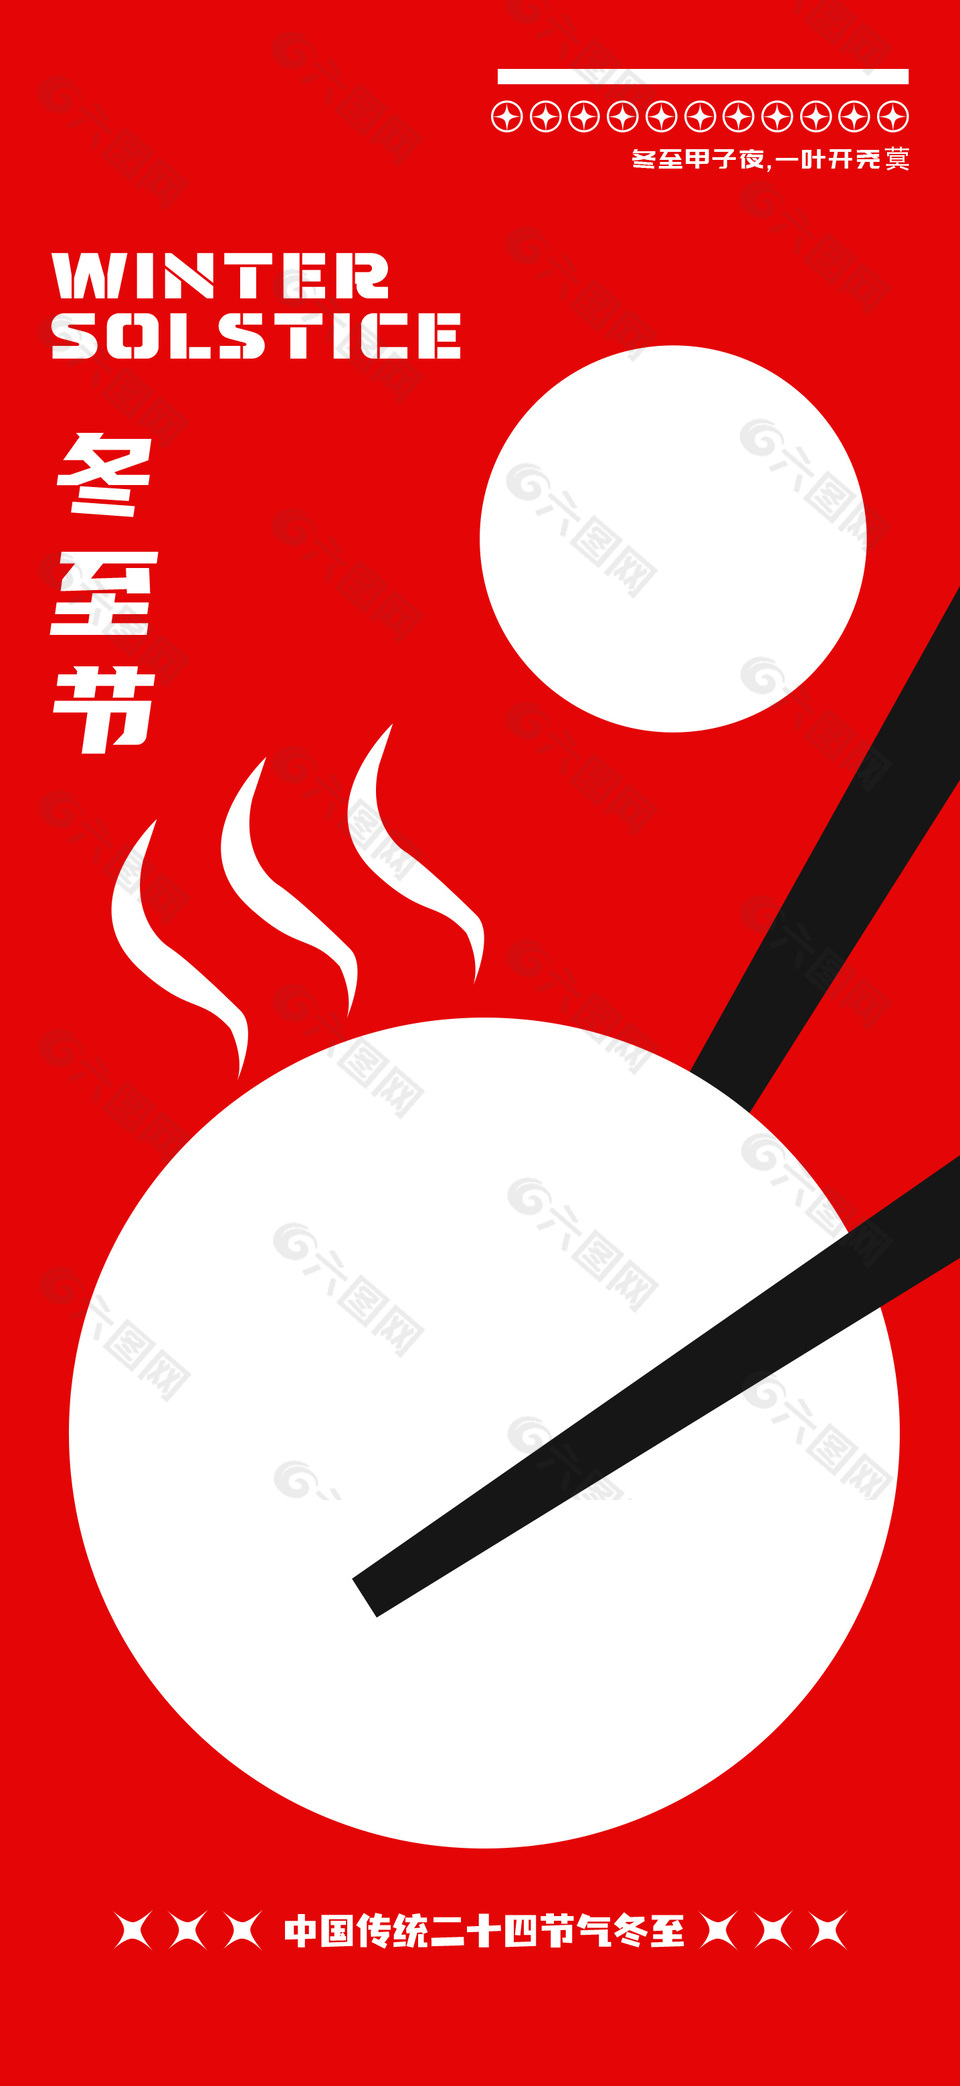 冬至节吃汤圆简约红色传统海报